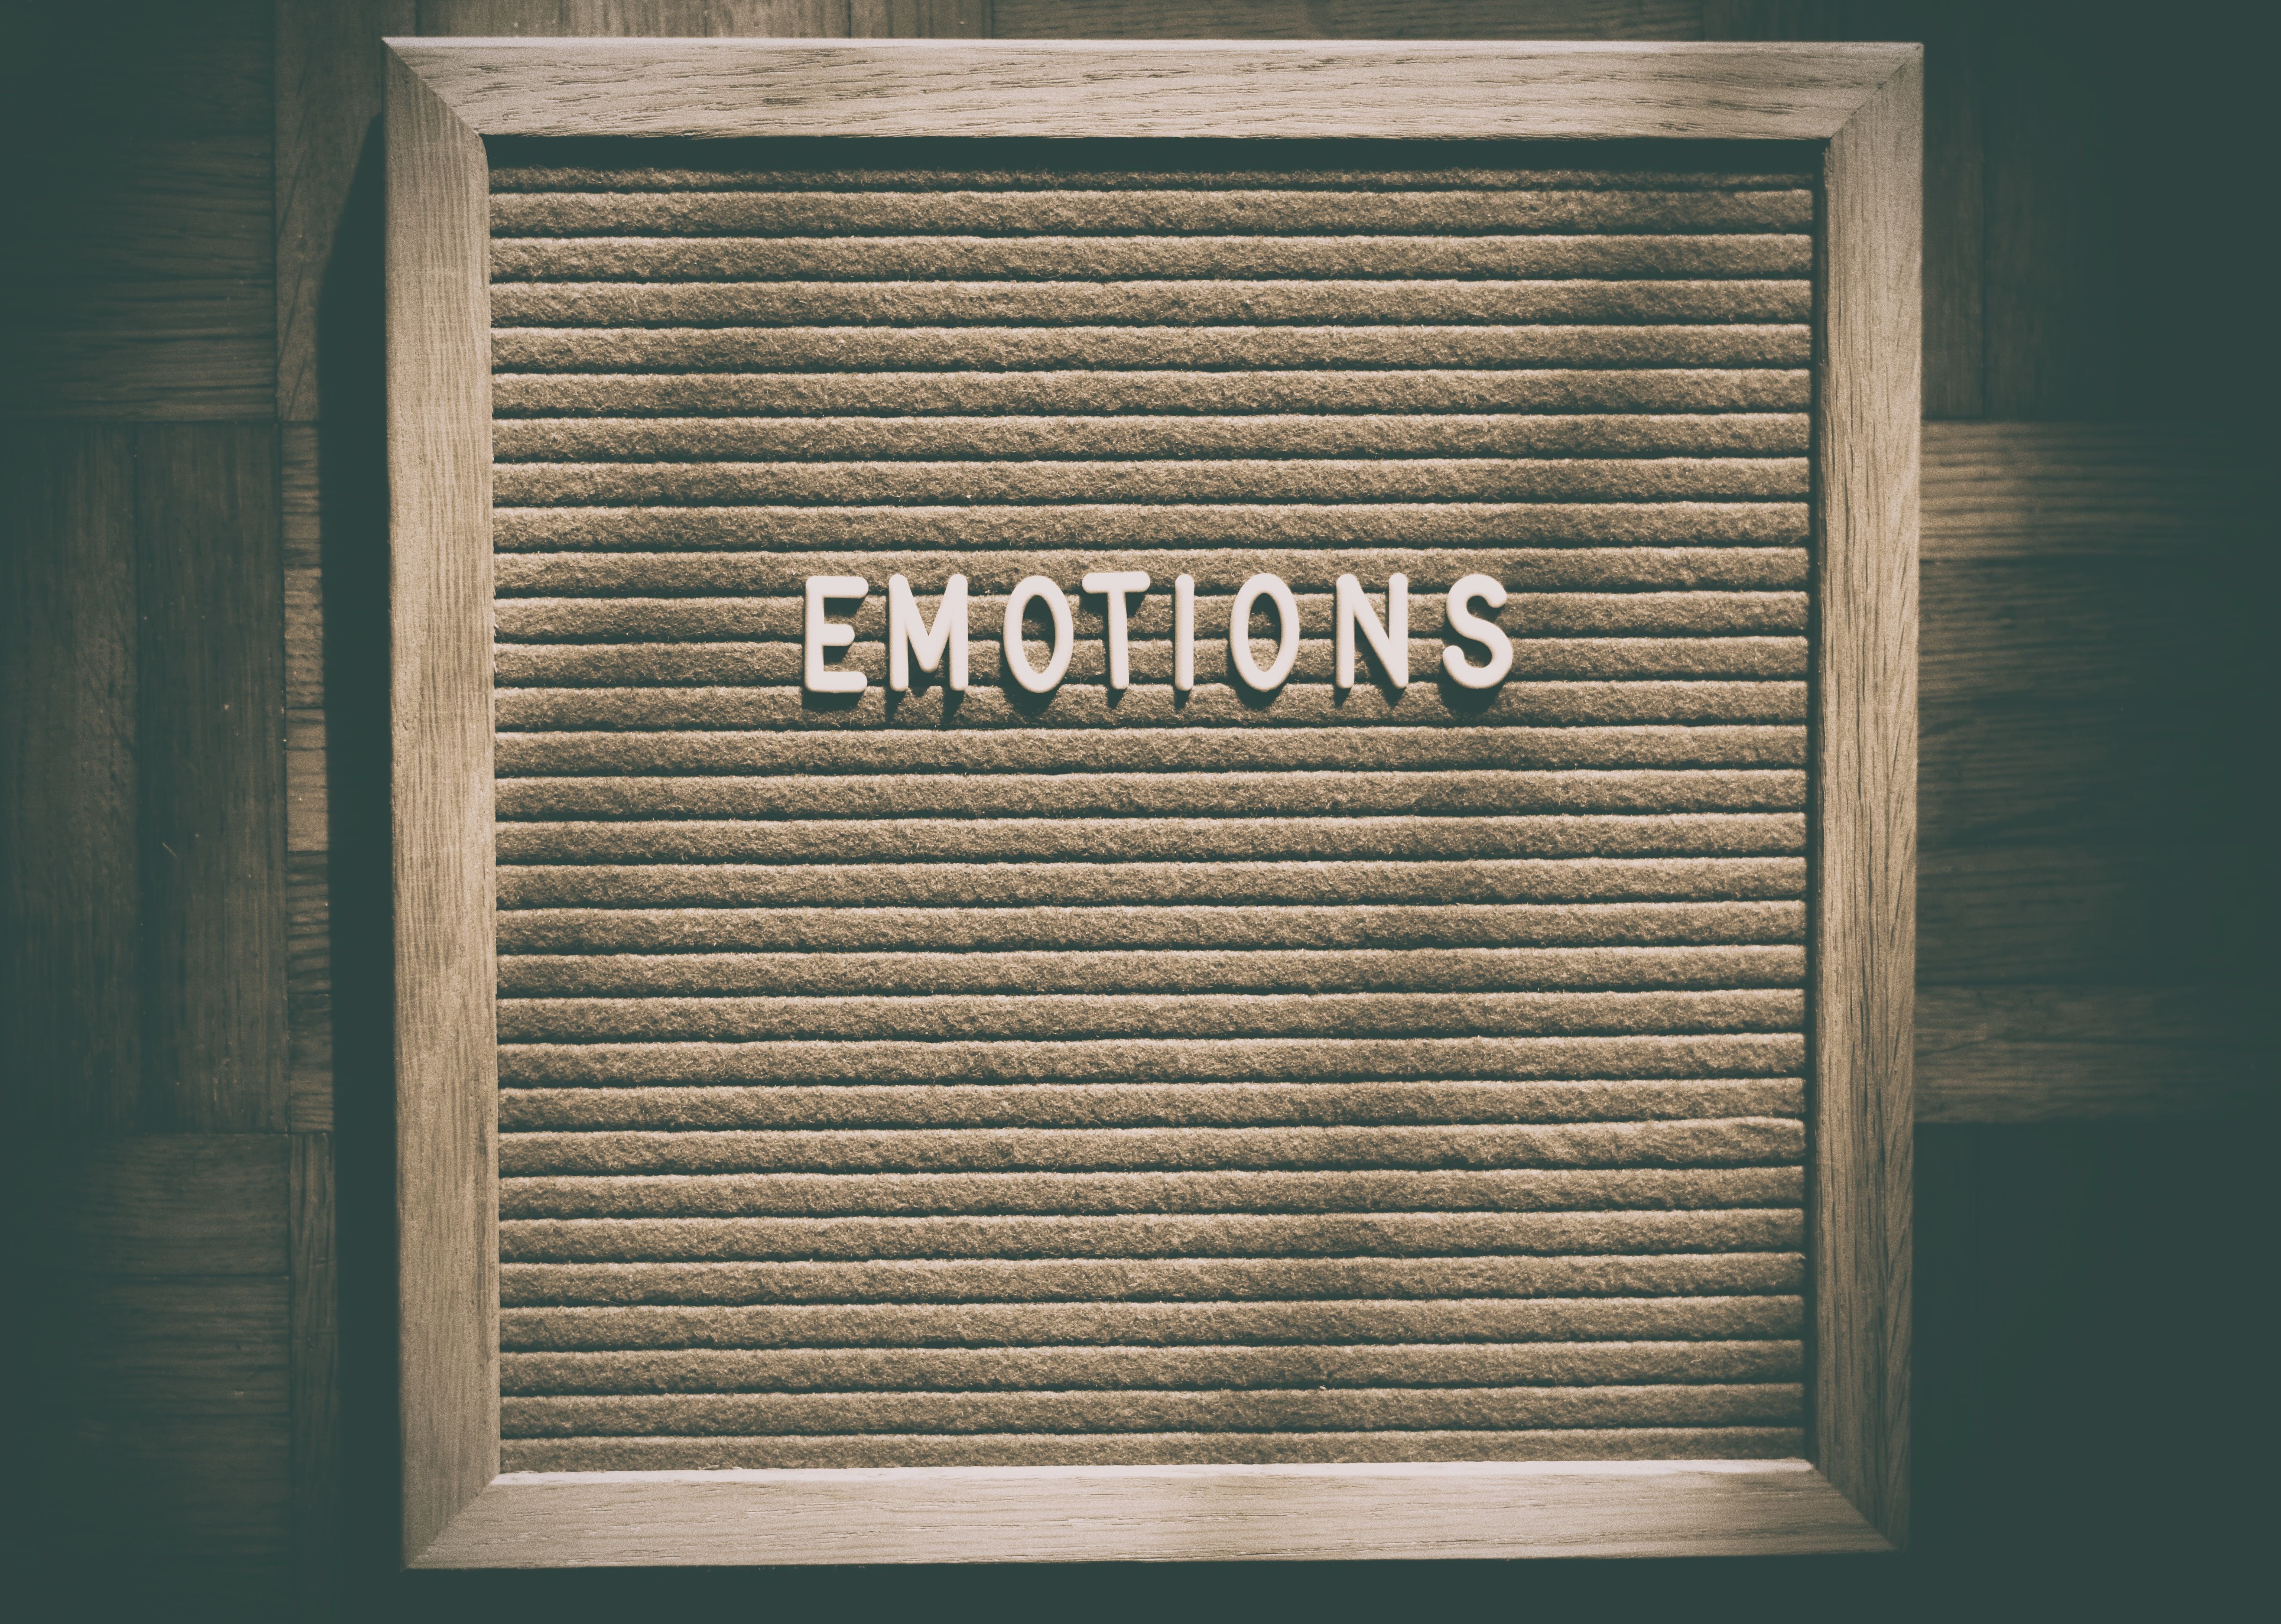 "Emotions" steht auf einem dunkelen Hintergrund